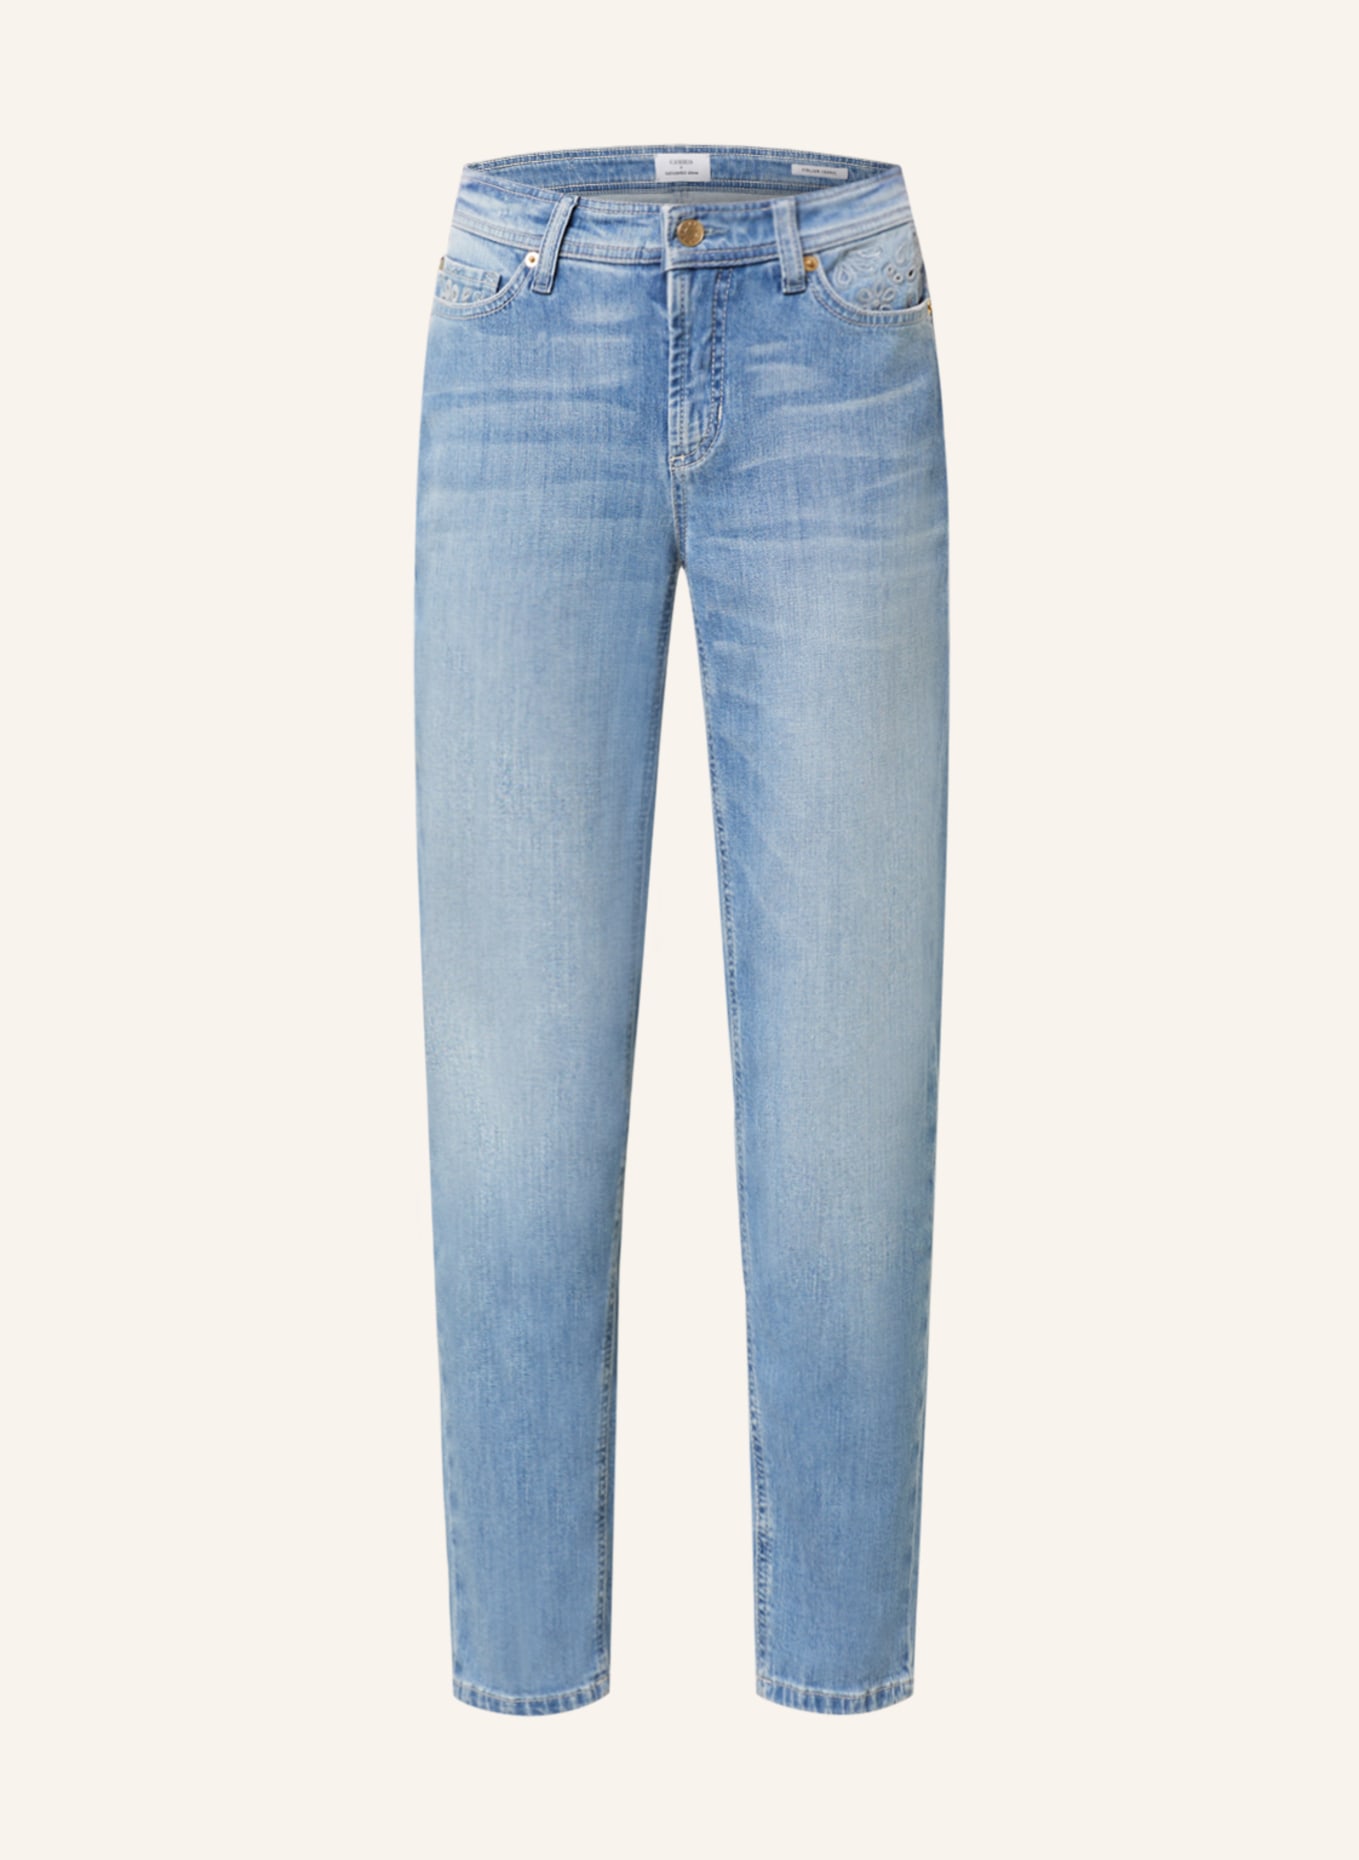 CAMBIO Jeans PIPER, Farbe: 5361 eco feminine used (Bild 1)